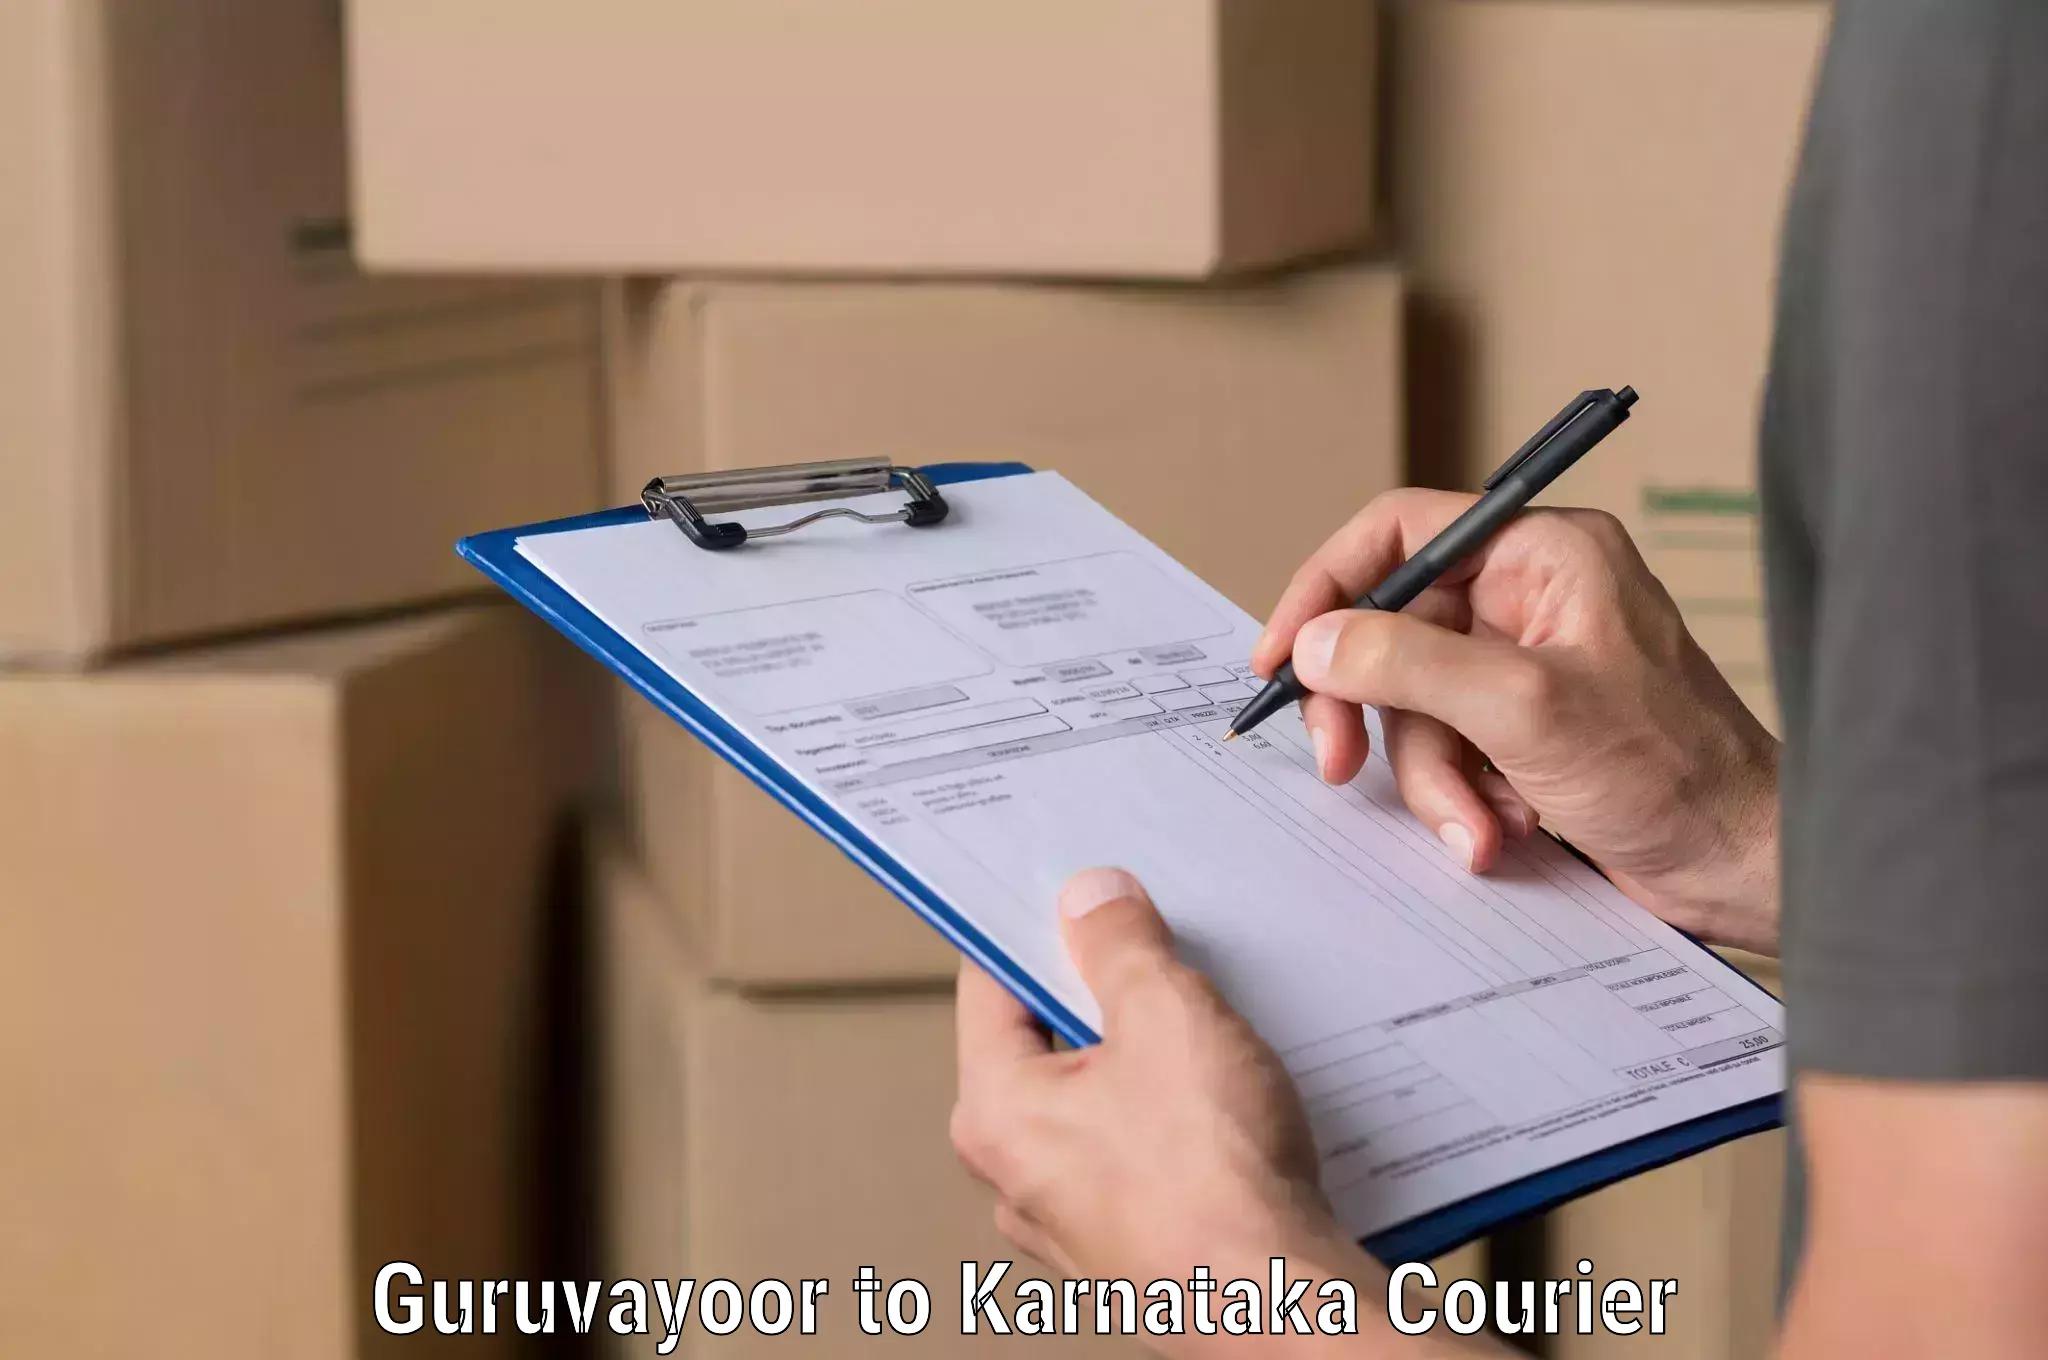 Business logistics support in Guruvayoor to Yenepoya Mangalore